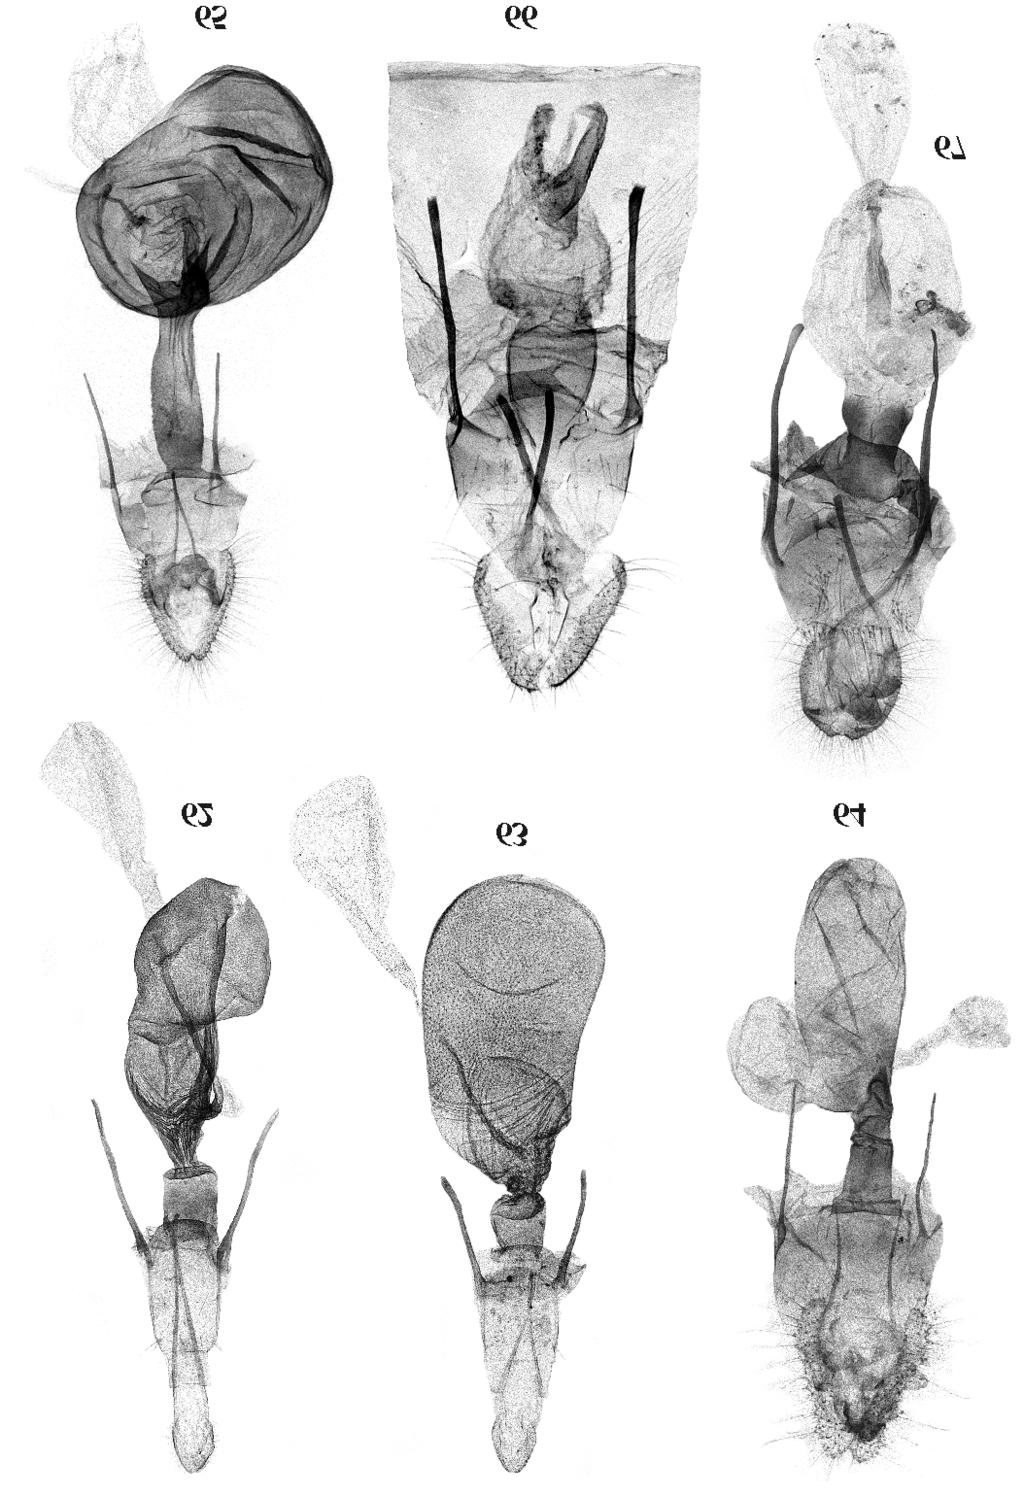 122 J. RAZOWSKI, V.O.BECKER Figs 62-67. Female geni